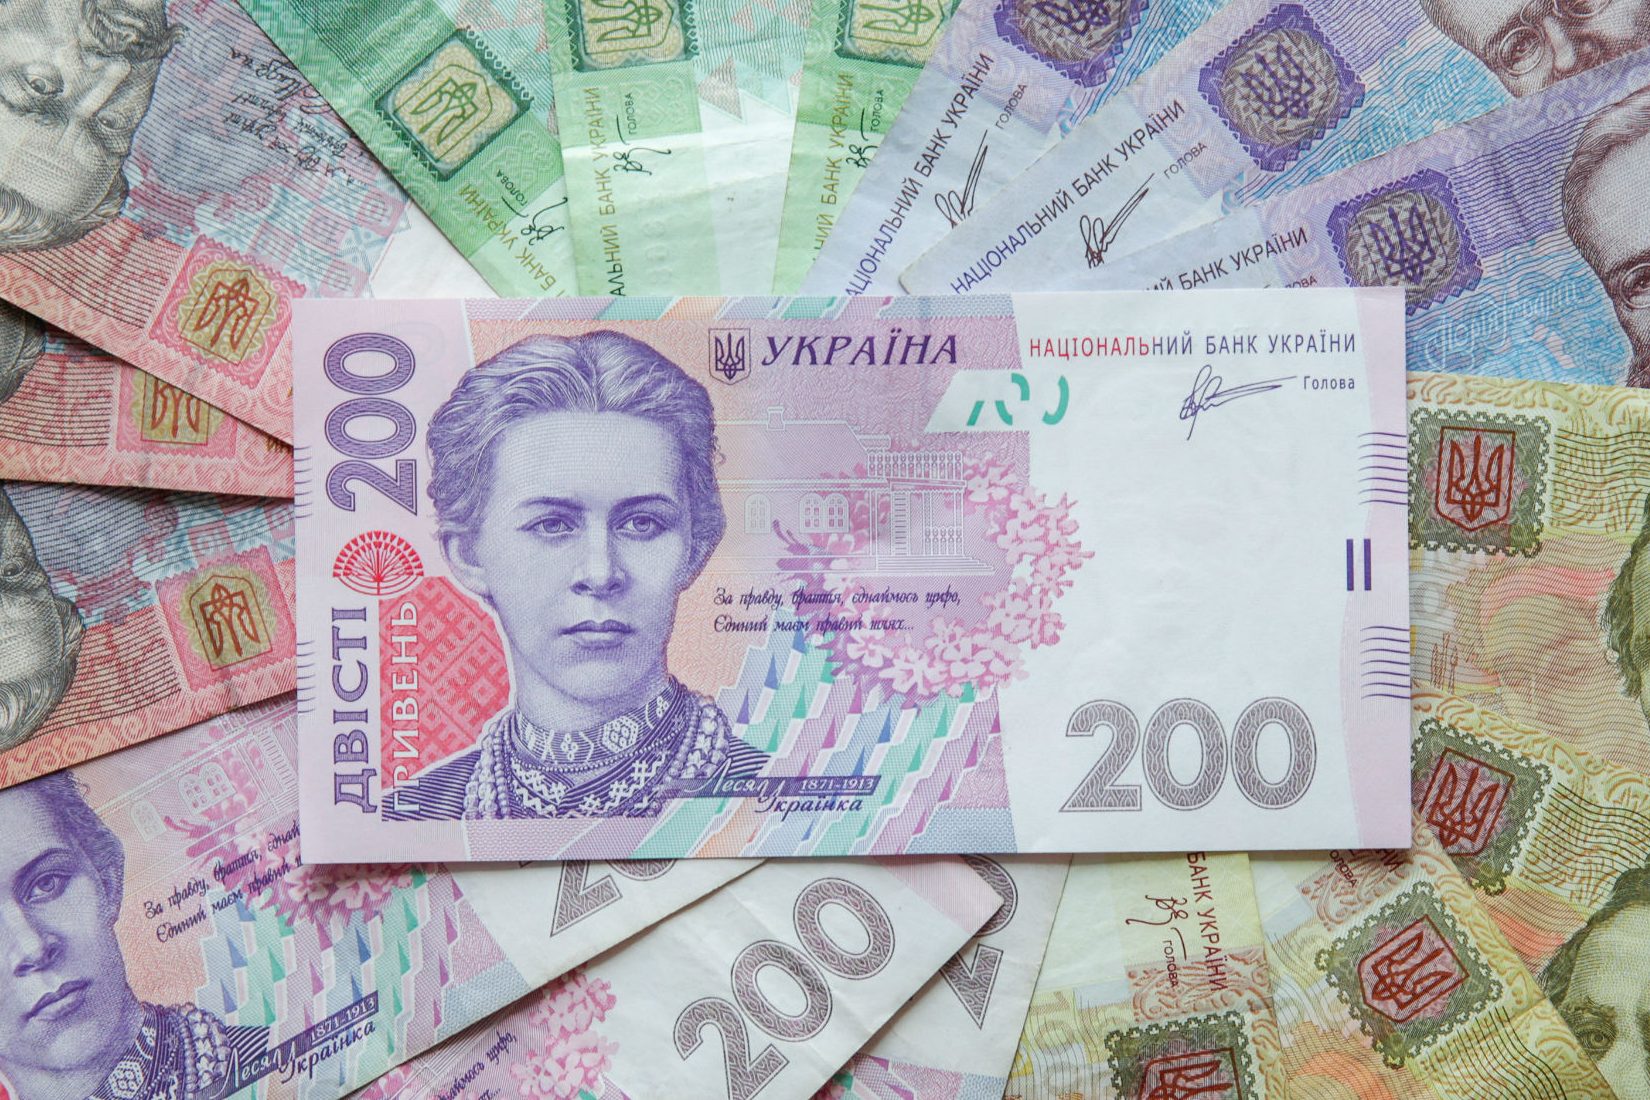 Крупный бизнес Запорожья пополнил городскую казну на 1 миллиард гривен